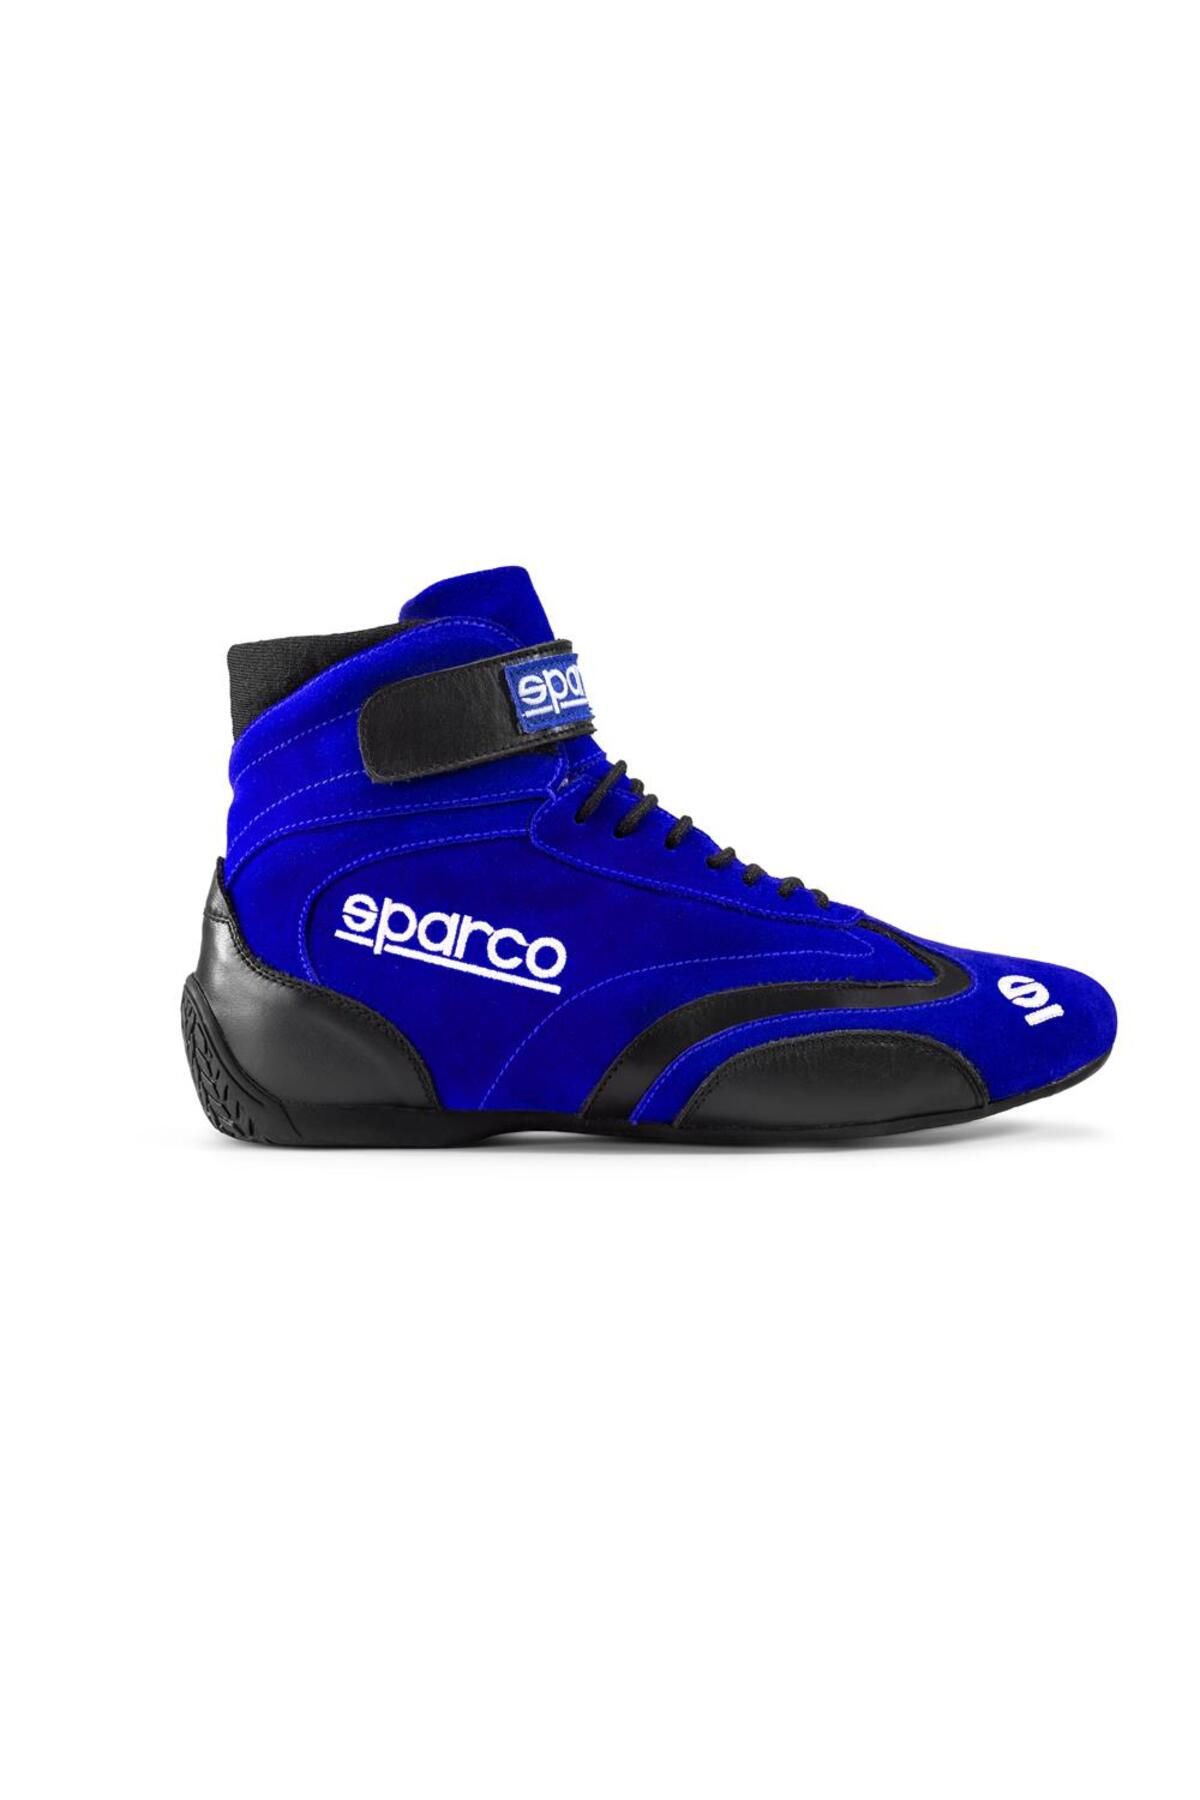 Sparco Top Yarış Ayakkabısı Fia Onaylı Mavi 44 Numara